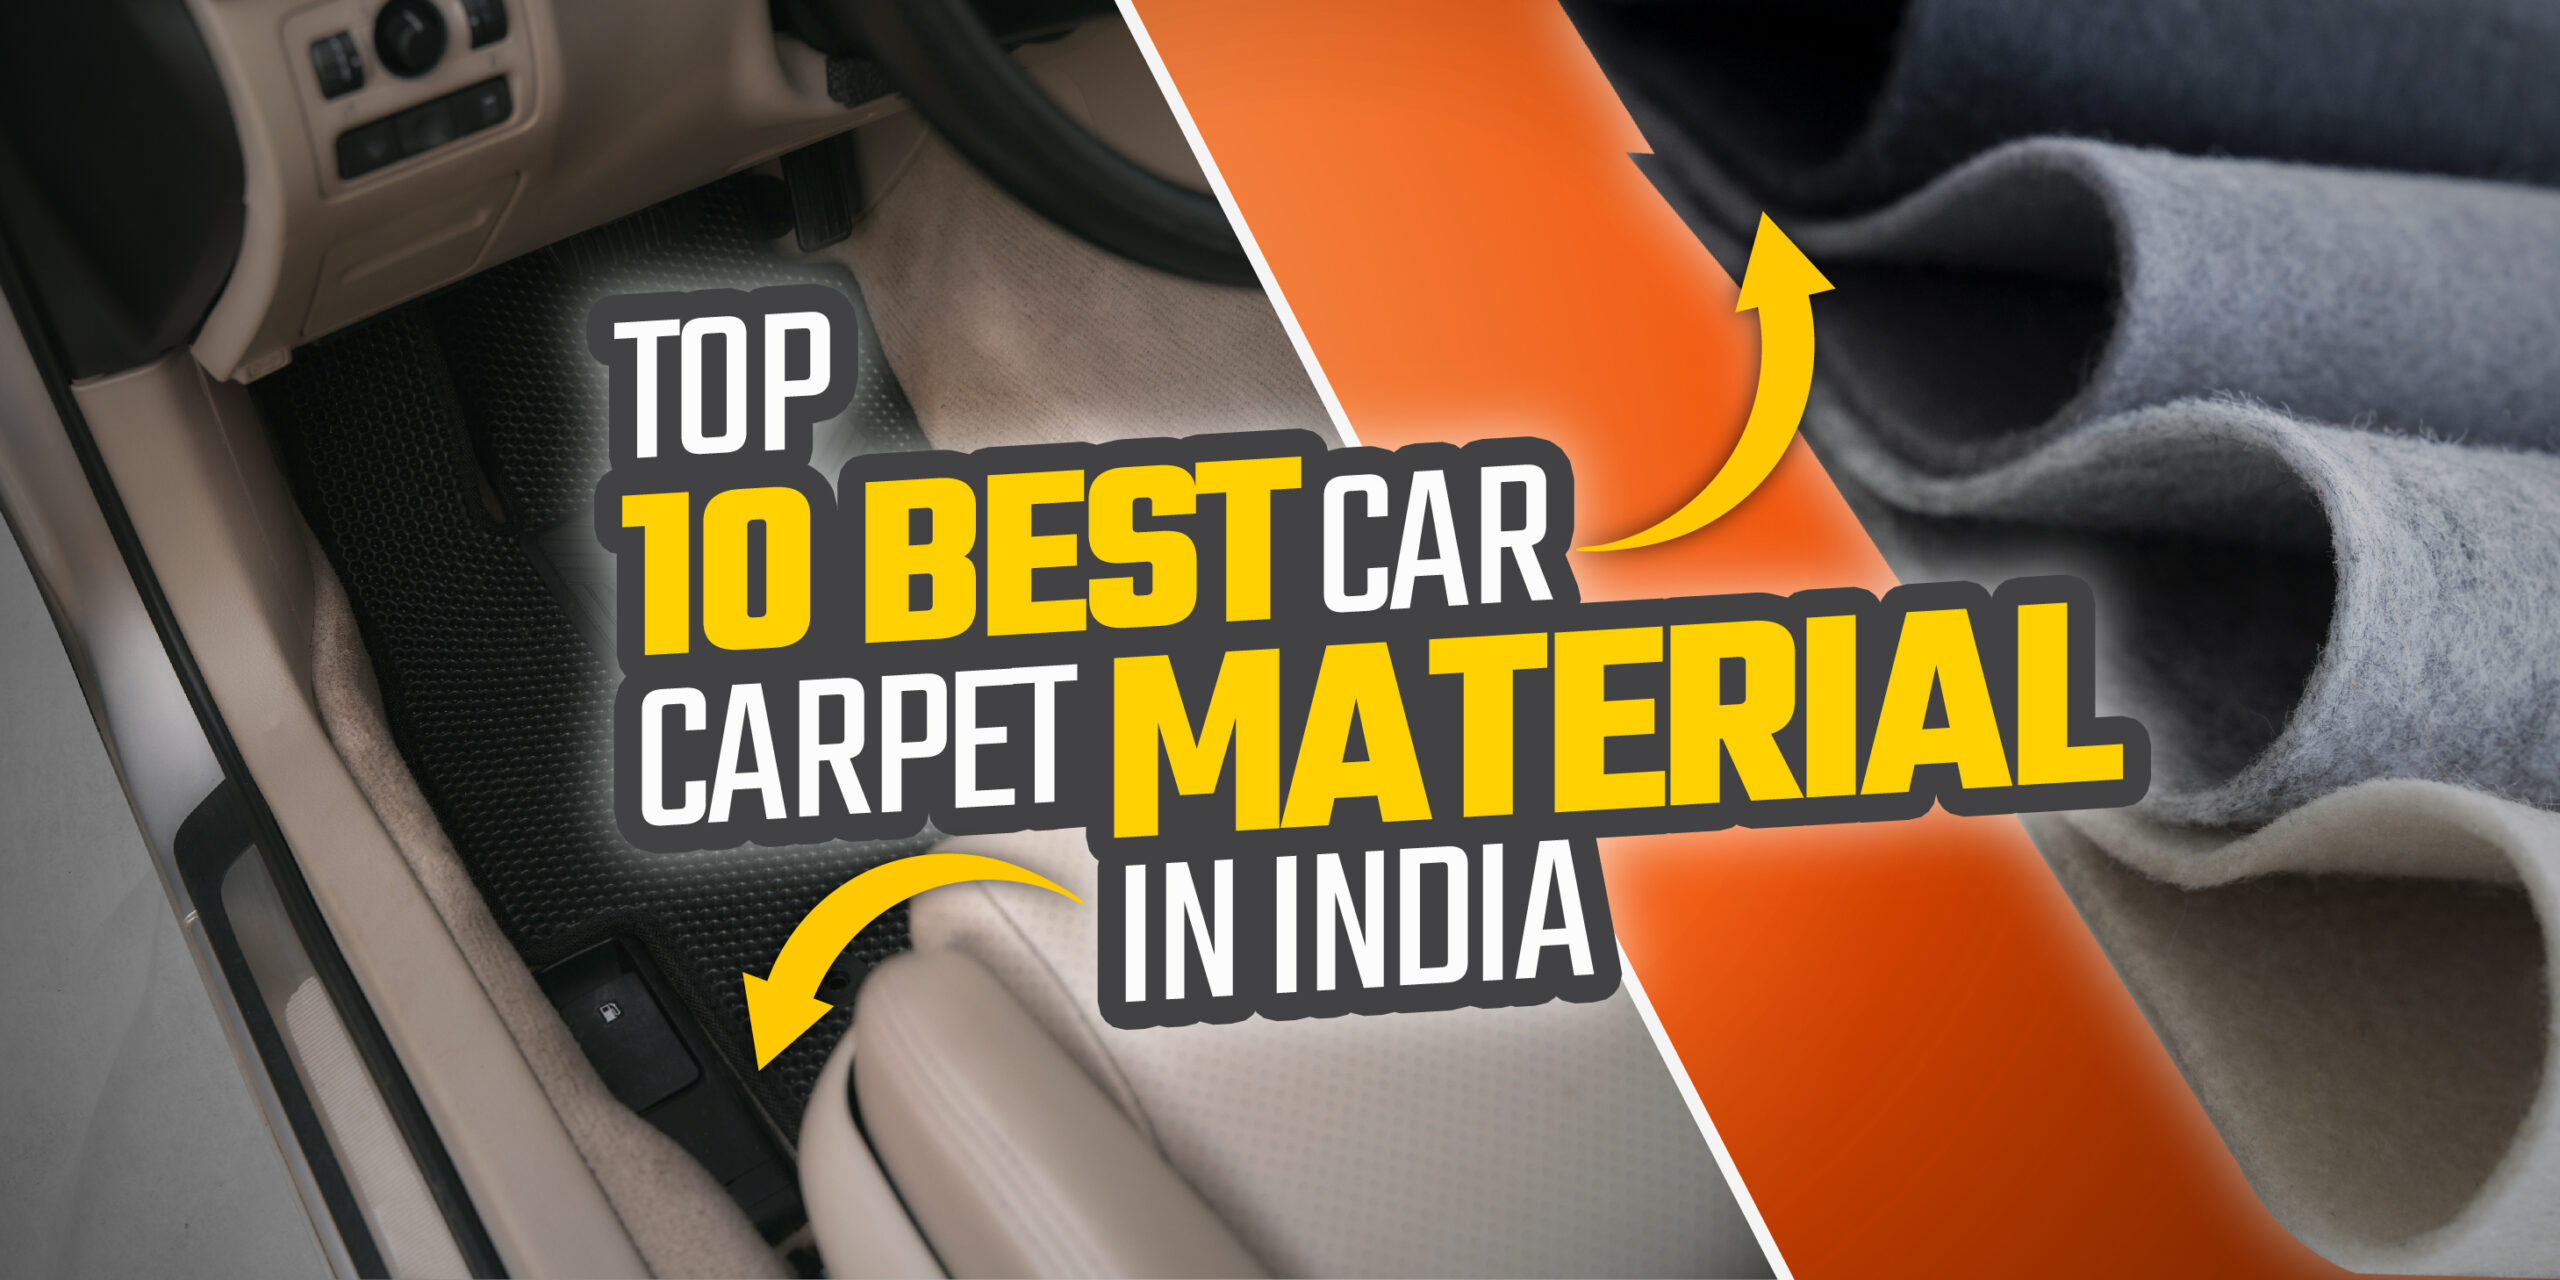 Top 10 Best Car Carpet Material